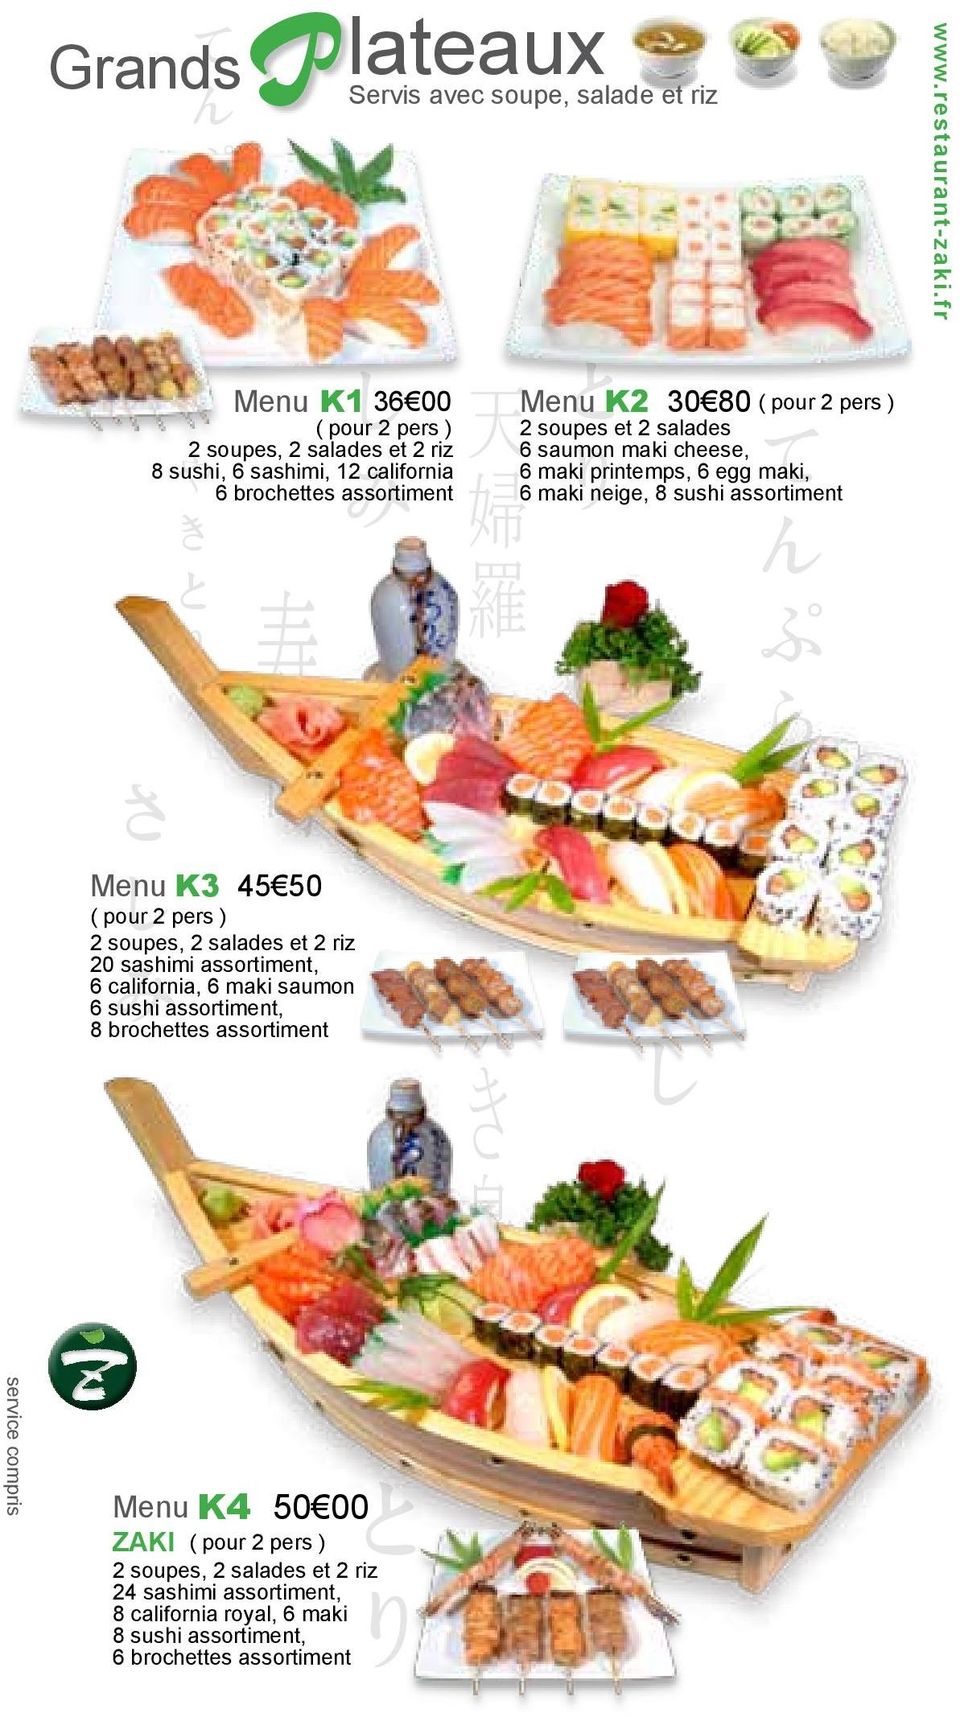 ZAKI ( pour 2 pers ) 2 soupes, 2 salades et 2 riz 24 sashimi assortiment, 8 california royal, 6 maki 8 sushi assortiment, 6 brochettes assortiment Servis avec soupe,